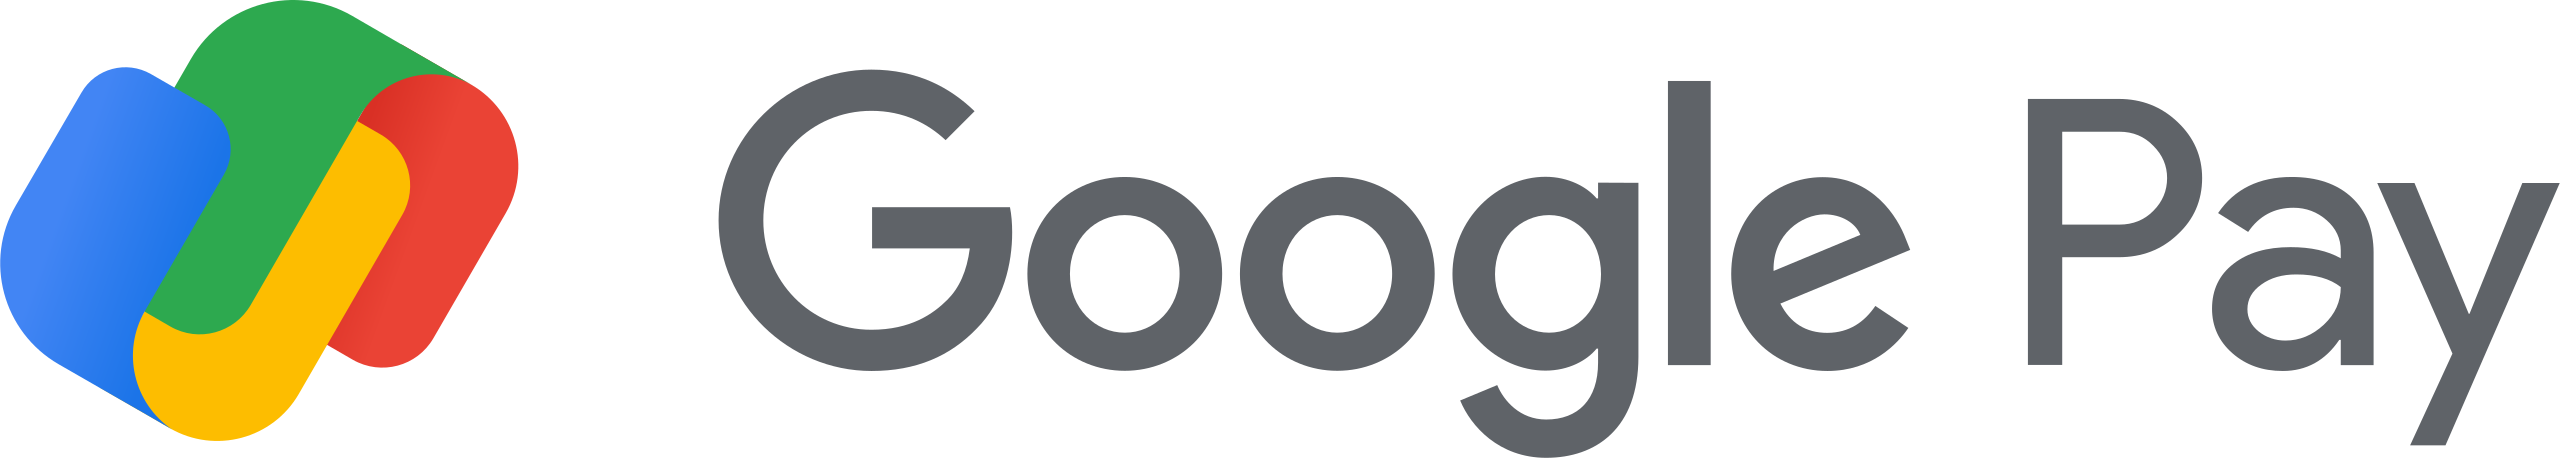 Google_Pay_Logo_(2020).svg